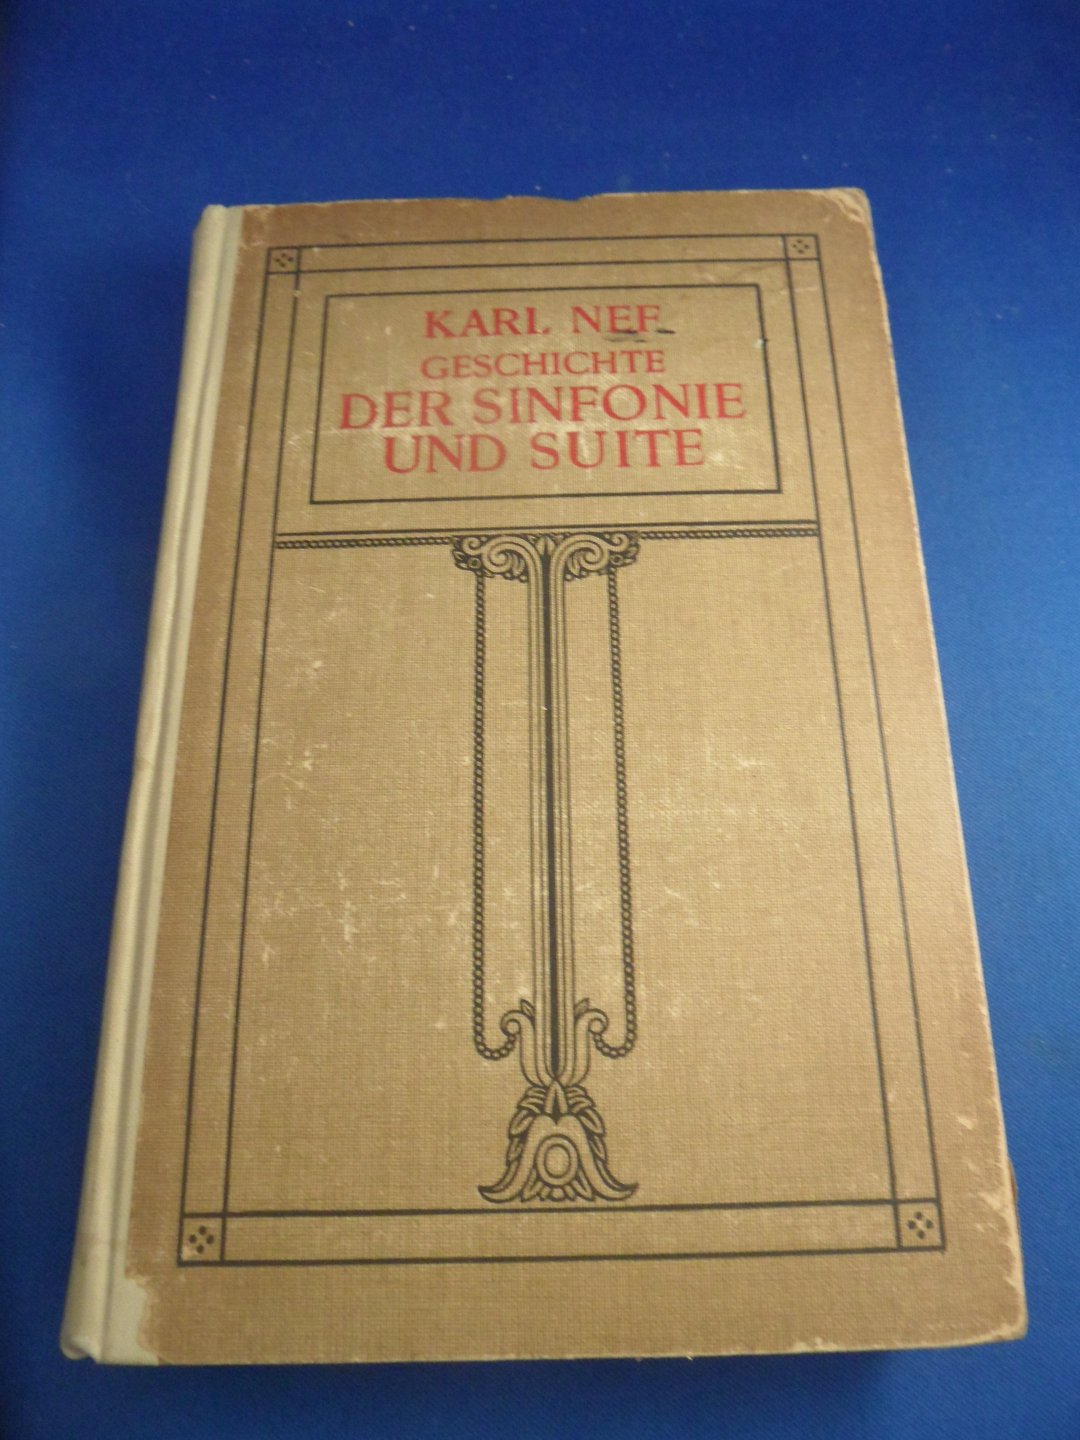 Nef, Karl - Geschichte der Sinfonie und Suite